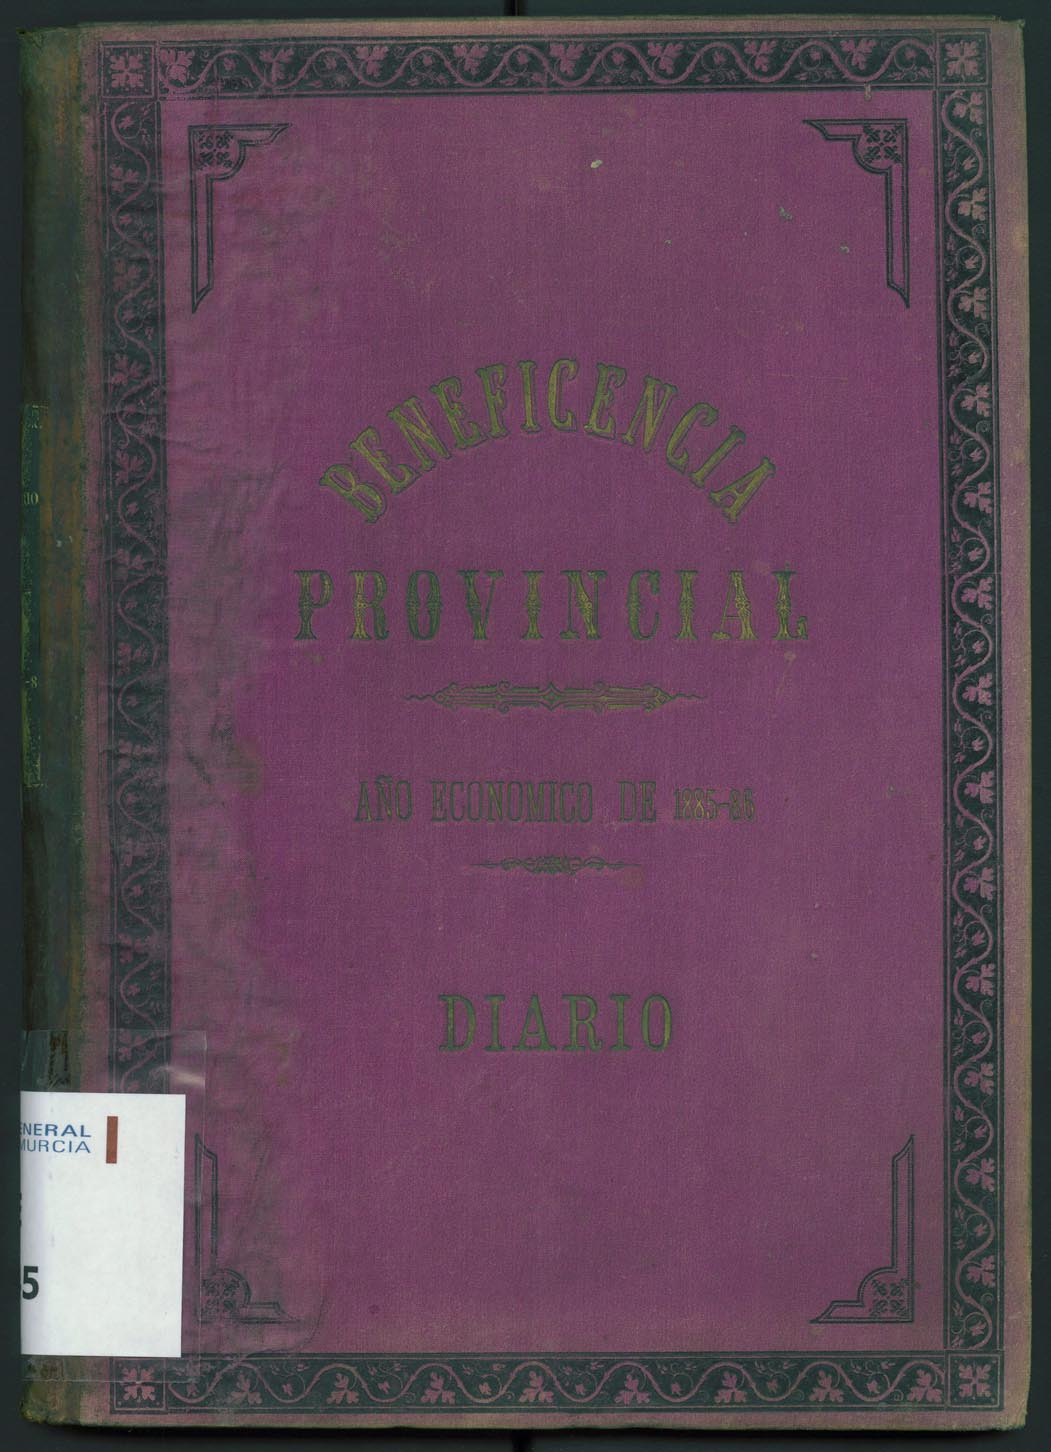 Libro diario del Hospital. Año económico 1885-1886.